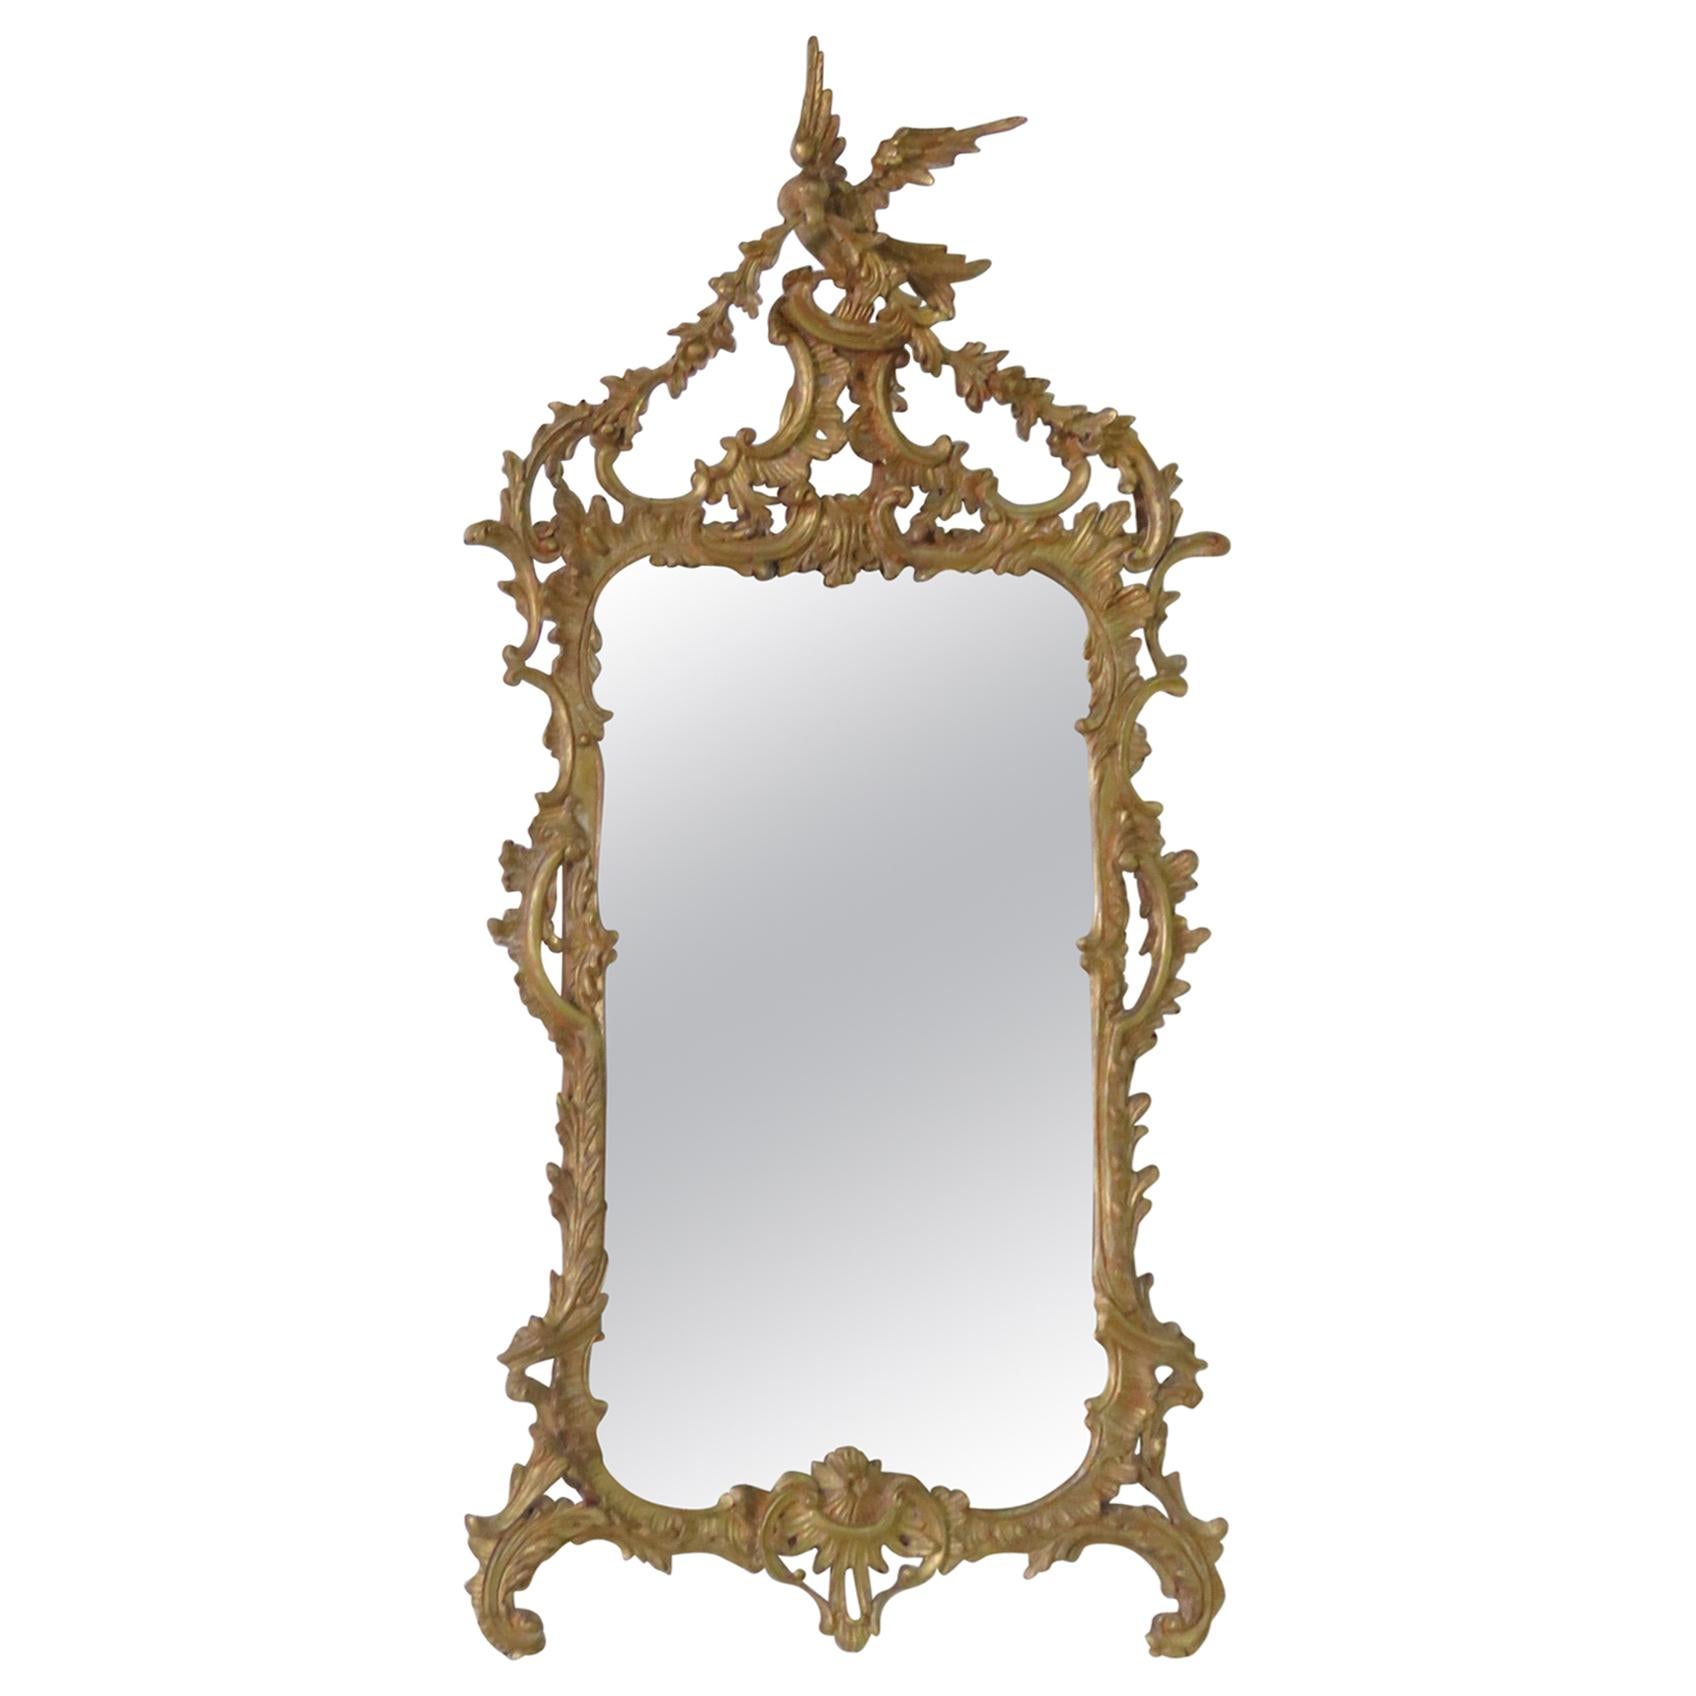 Regency Style Wall Mirror